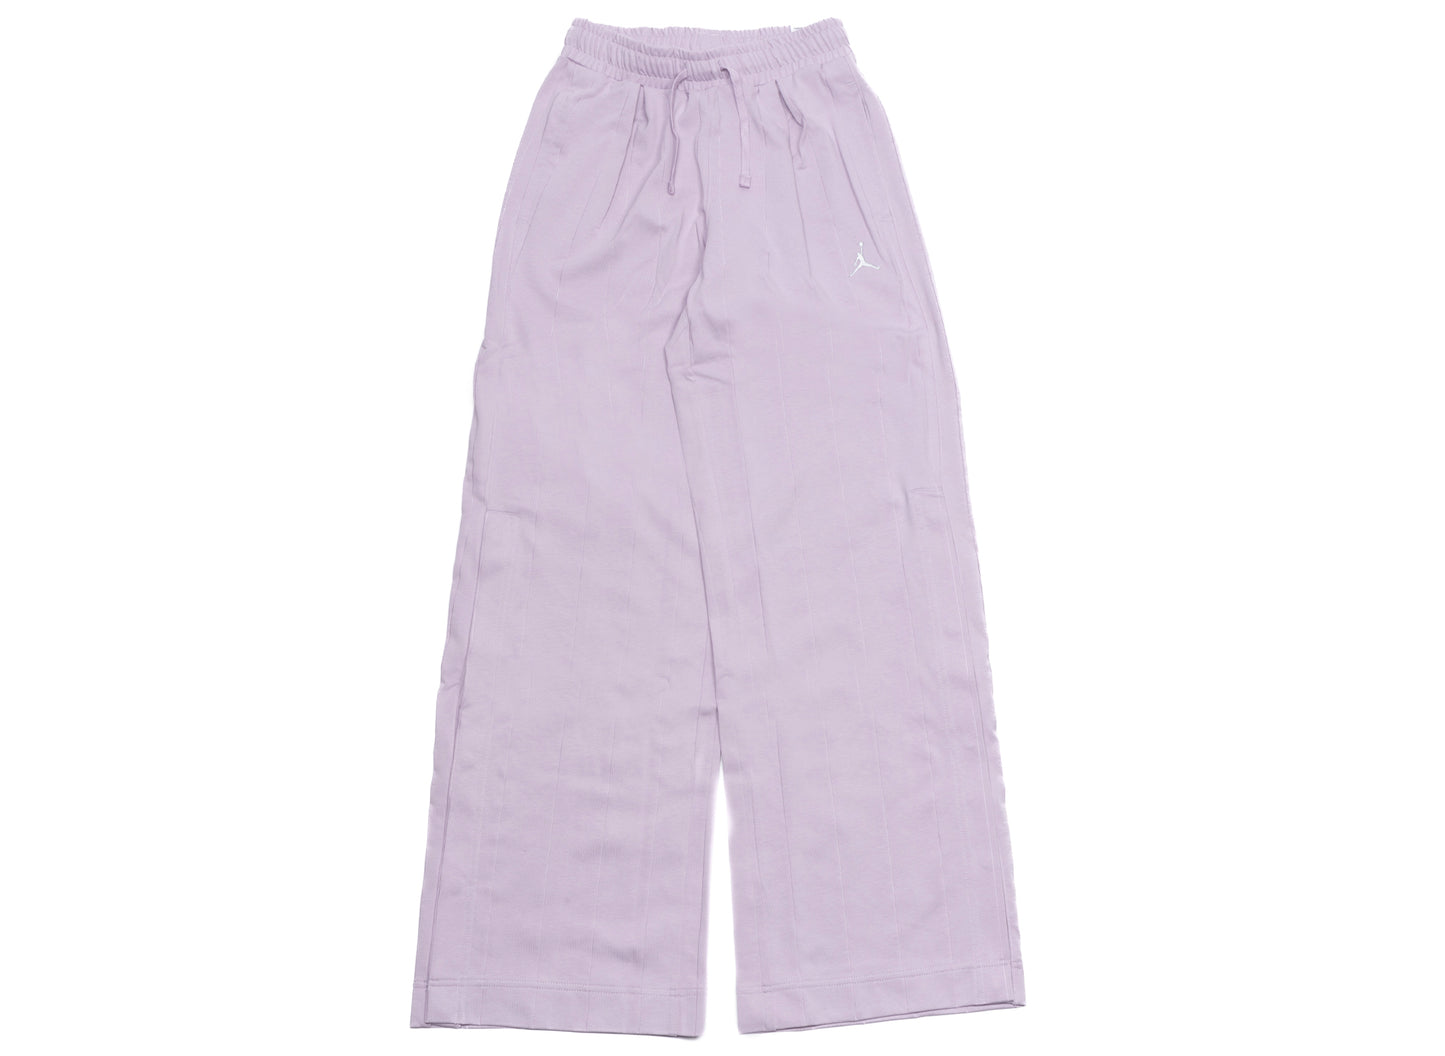 Women's Jordan Knit Pants in Iced Lilac